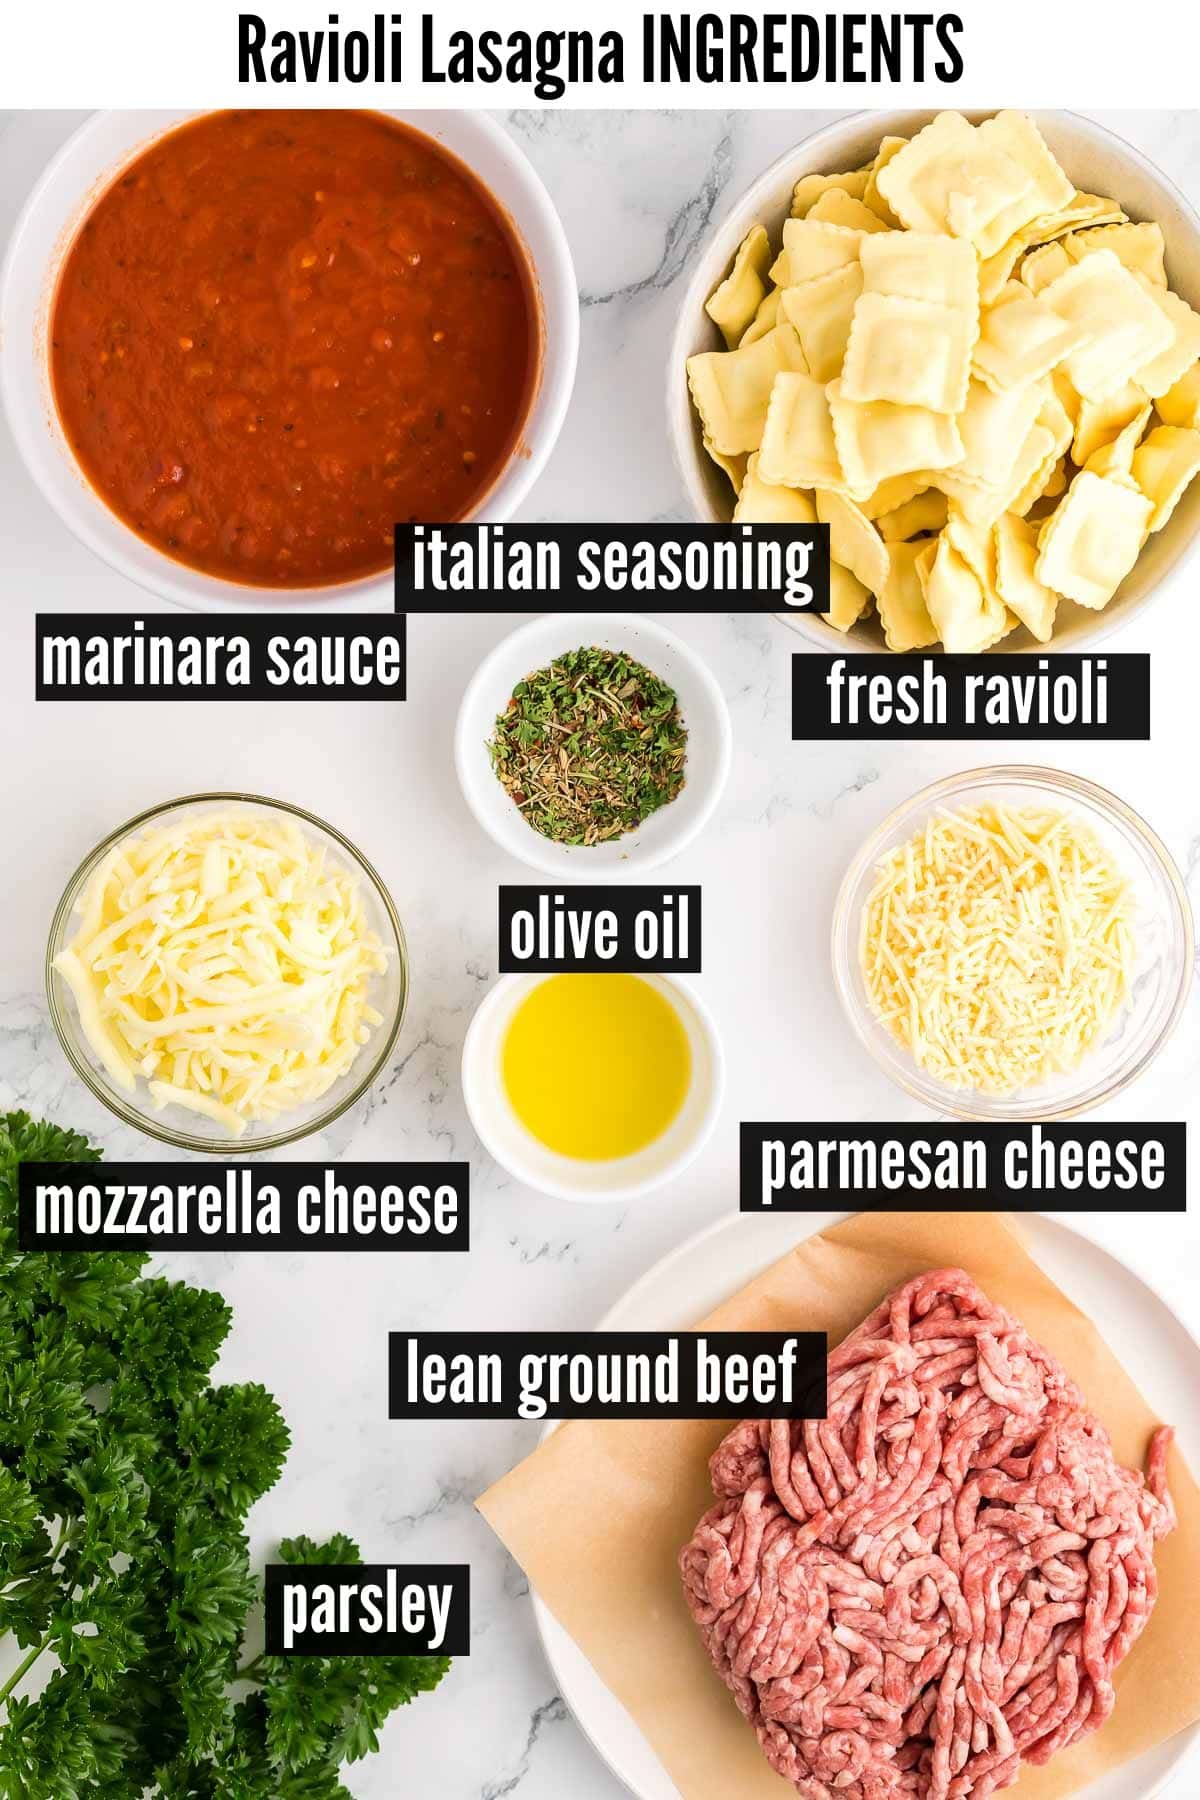 ravioli lasagna labelled ingredients.